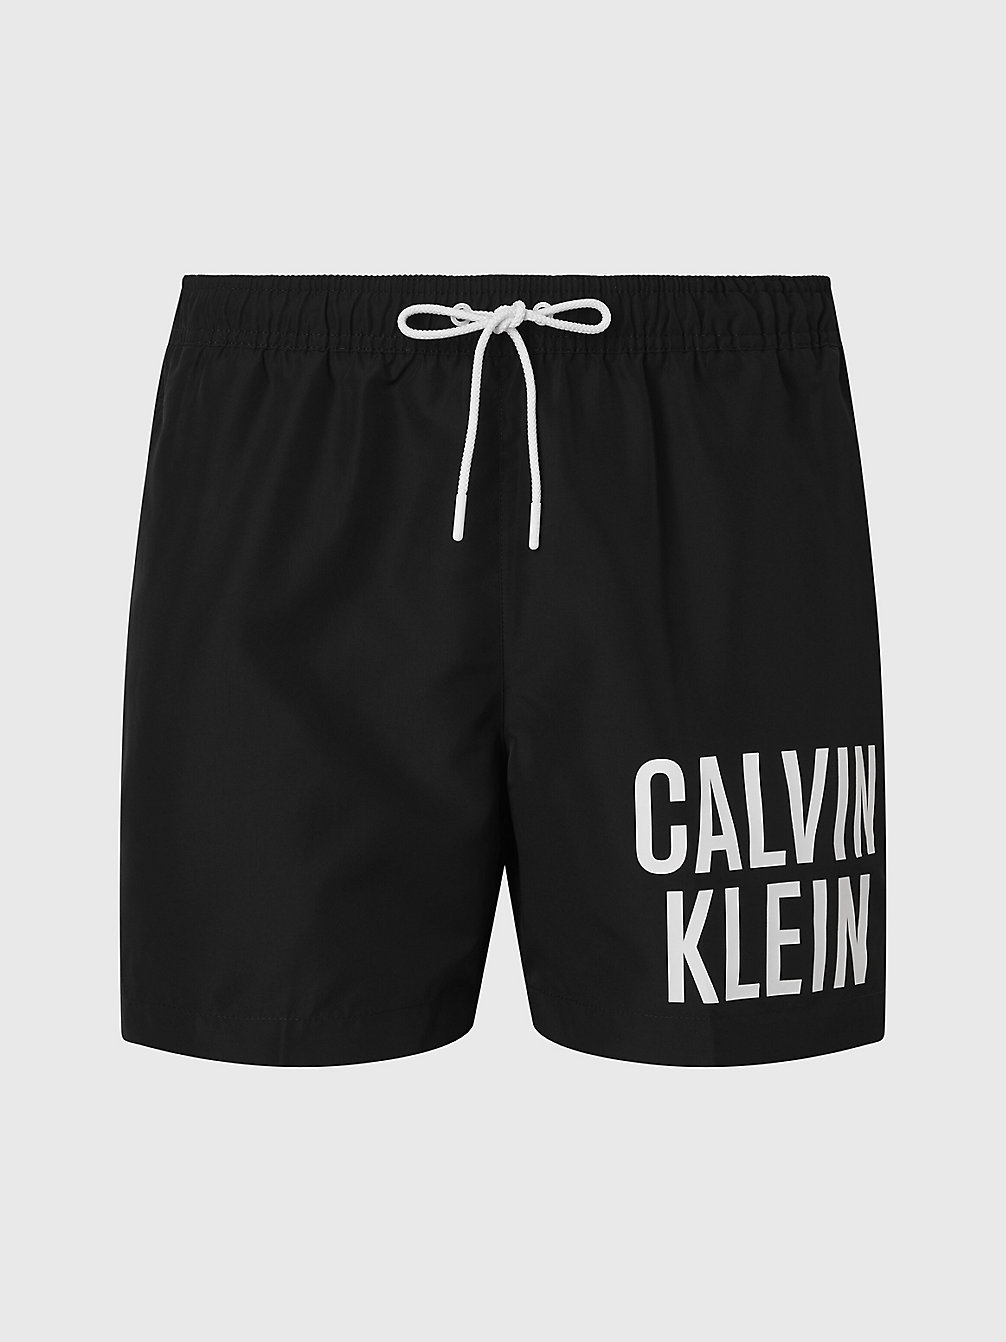 PVH BLACK > Medium Zwemshort Met Trekkoord > undefined heren - Calvin Klein